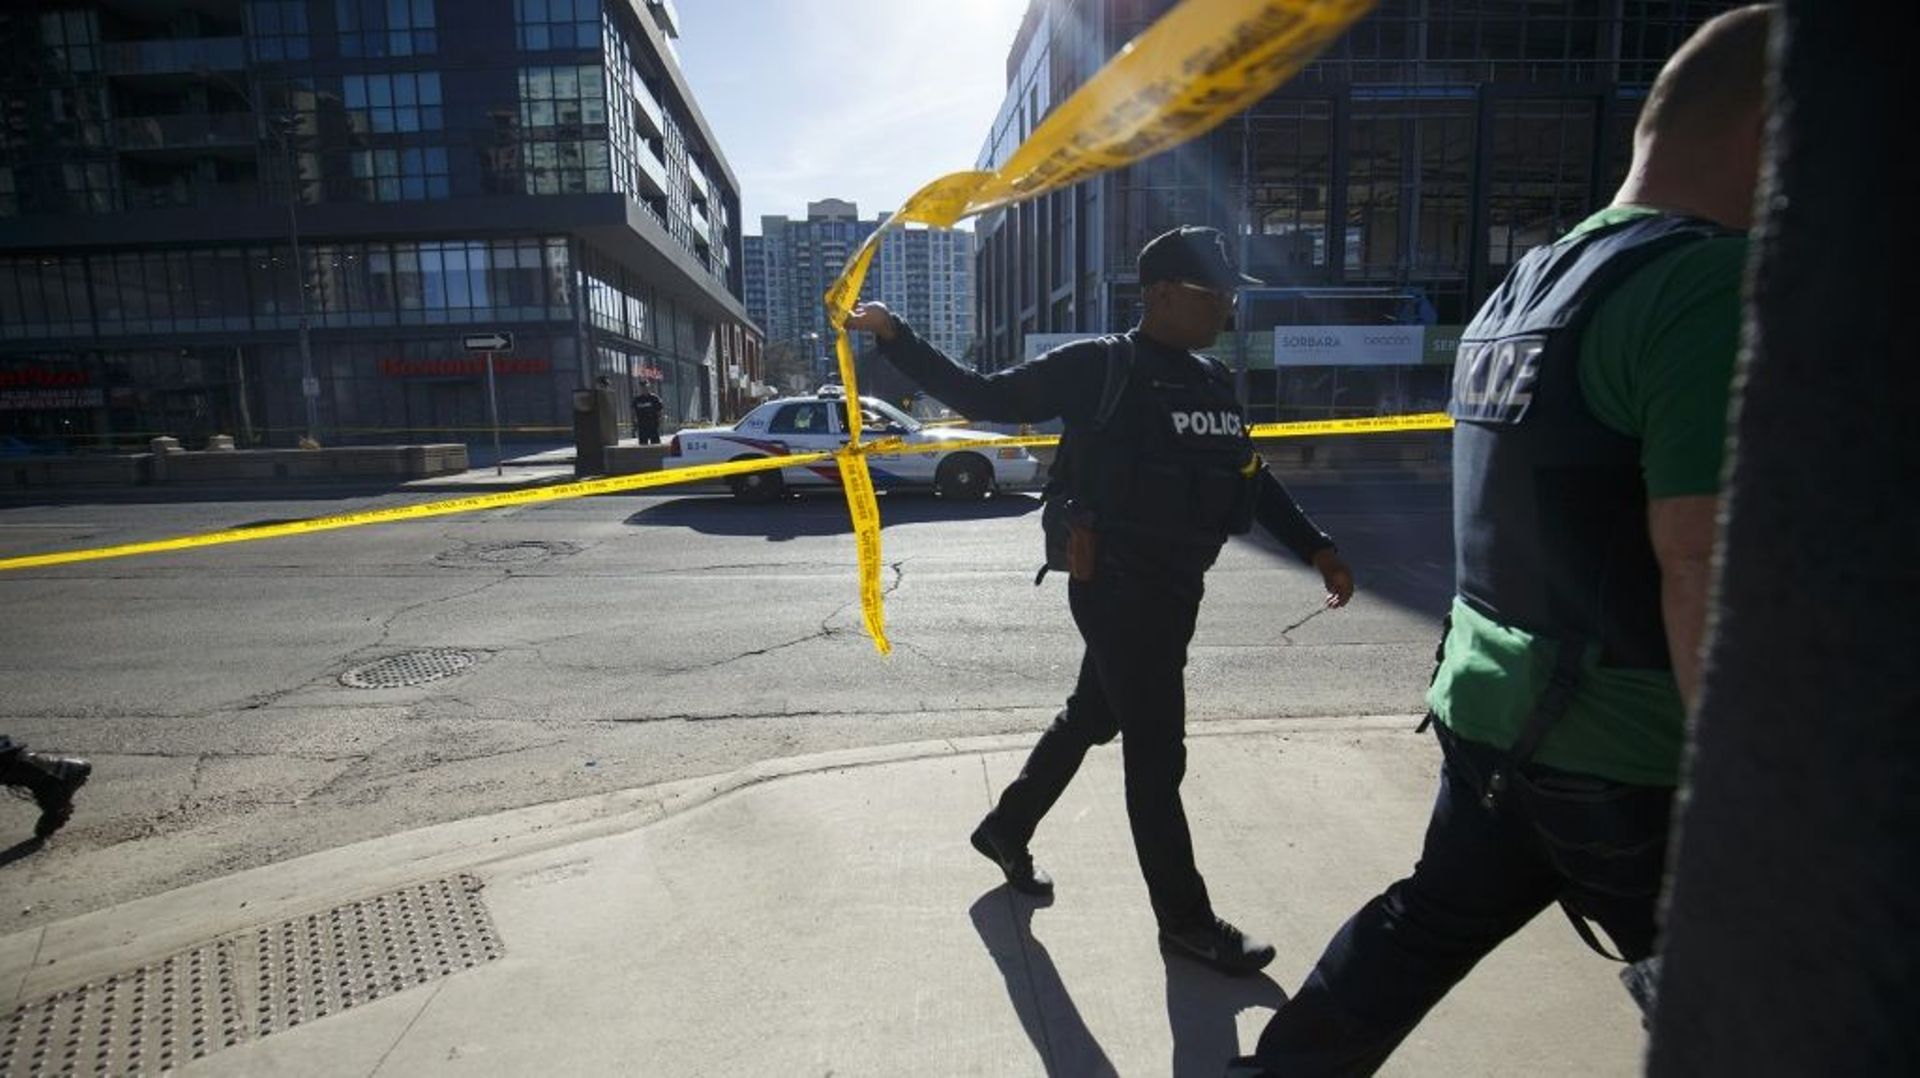 Cinq personnes ont été tuées et une autre blessée dimanche dans une fusillade dans la banlieue de Toronto, dans l’est du Canada